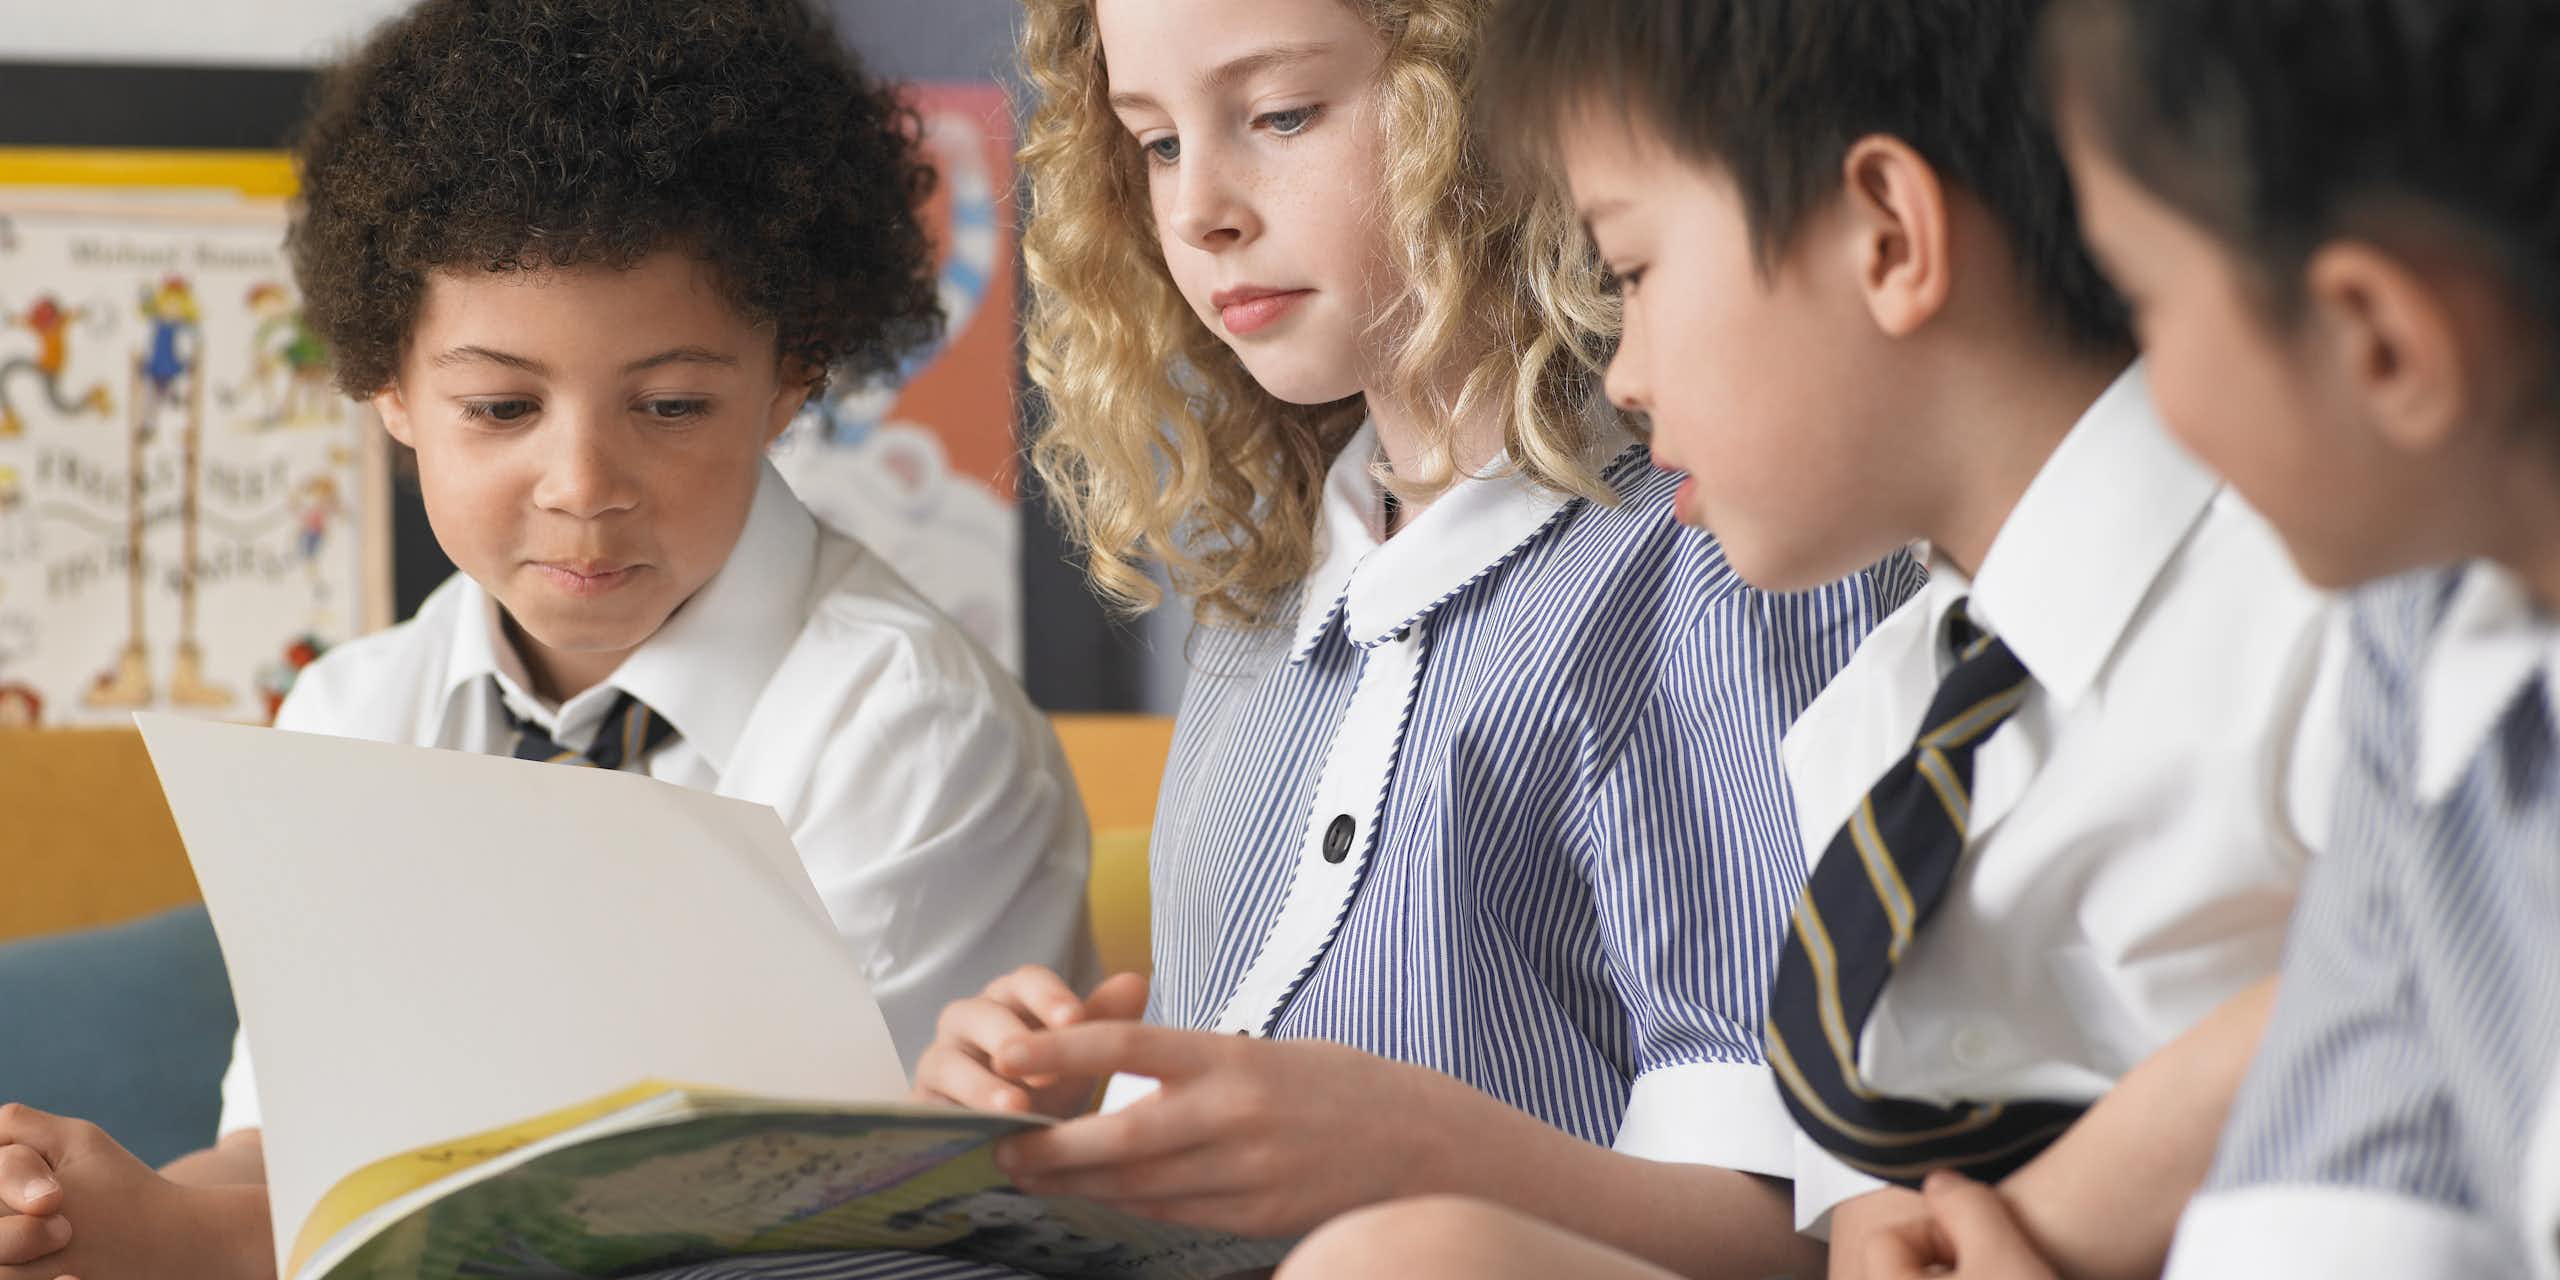 Children in school uniform looking at book